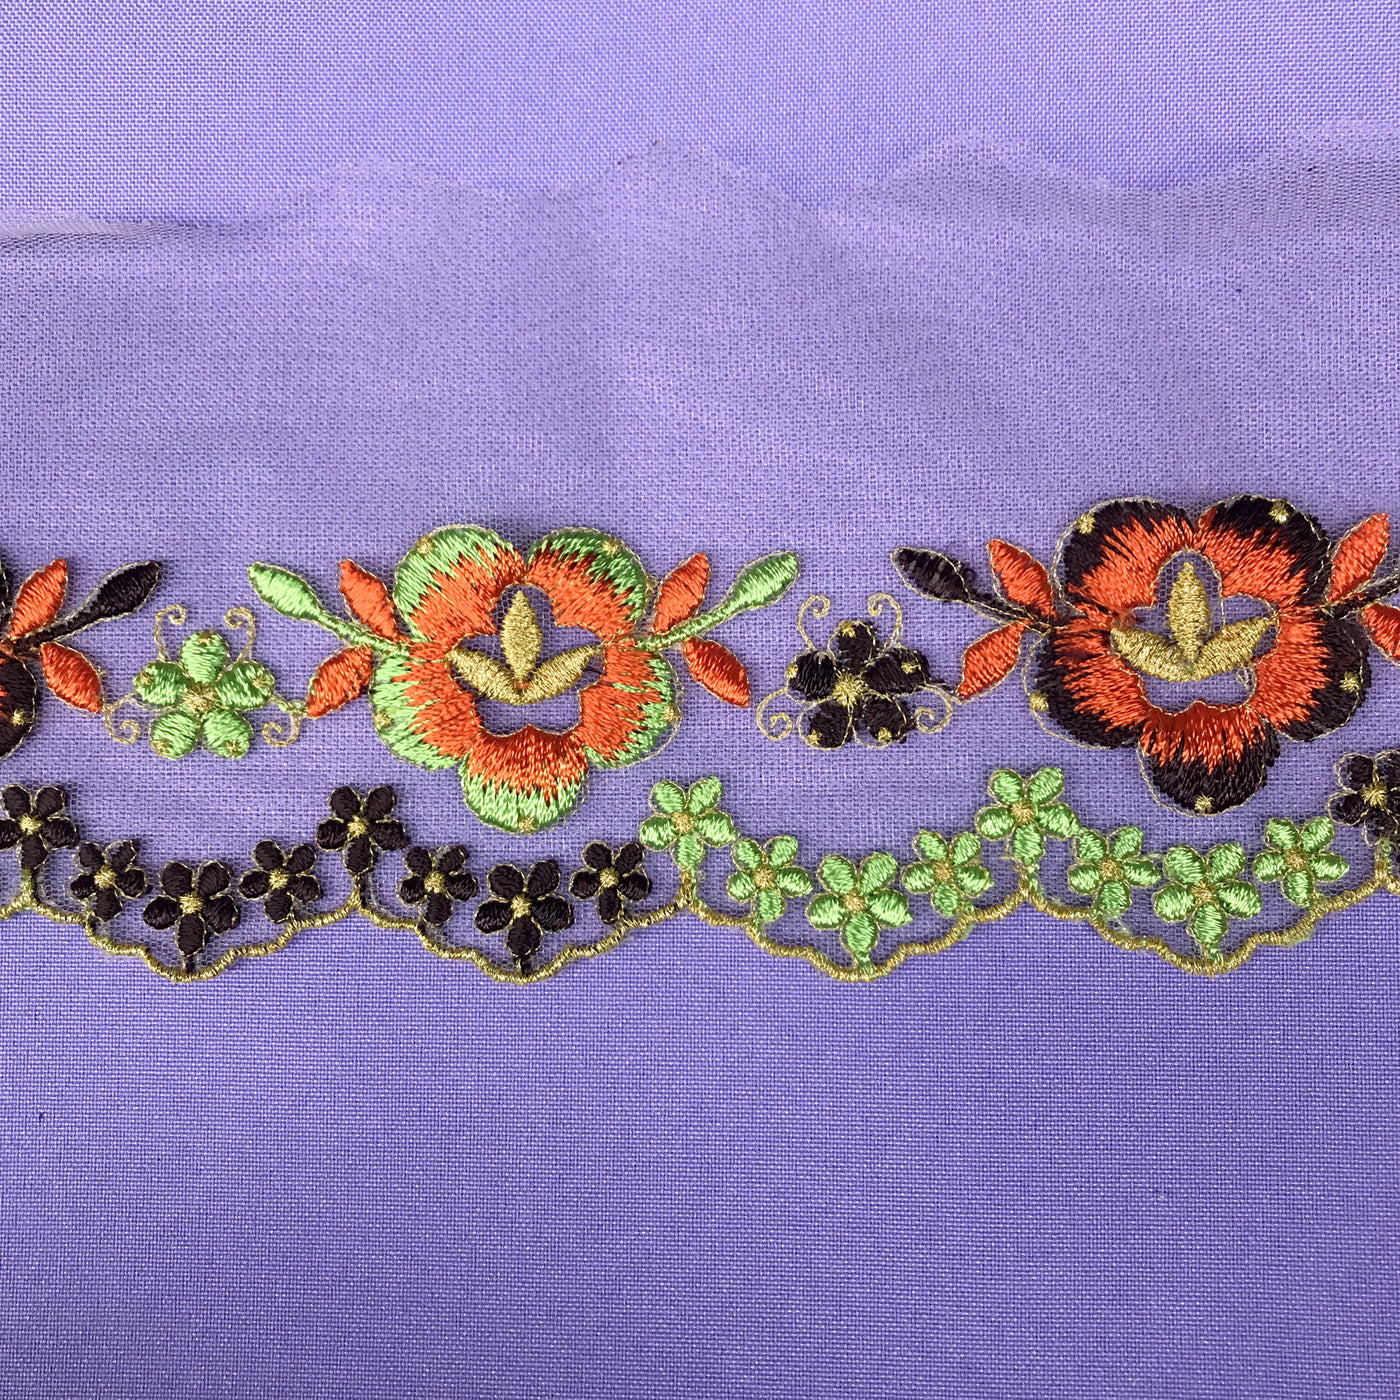 Recorte de encaje floral colorido bordado en malla de red 100% poliéster | Encaje EE. UU.